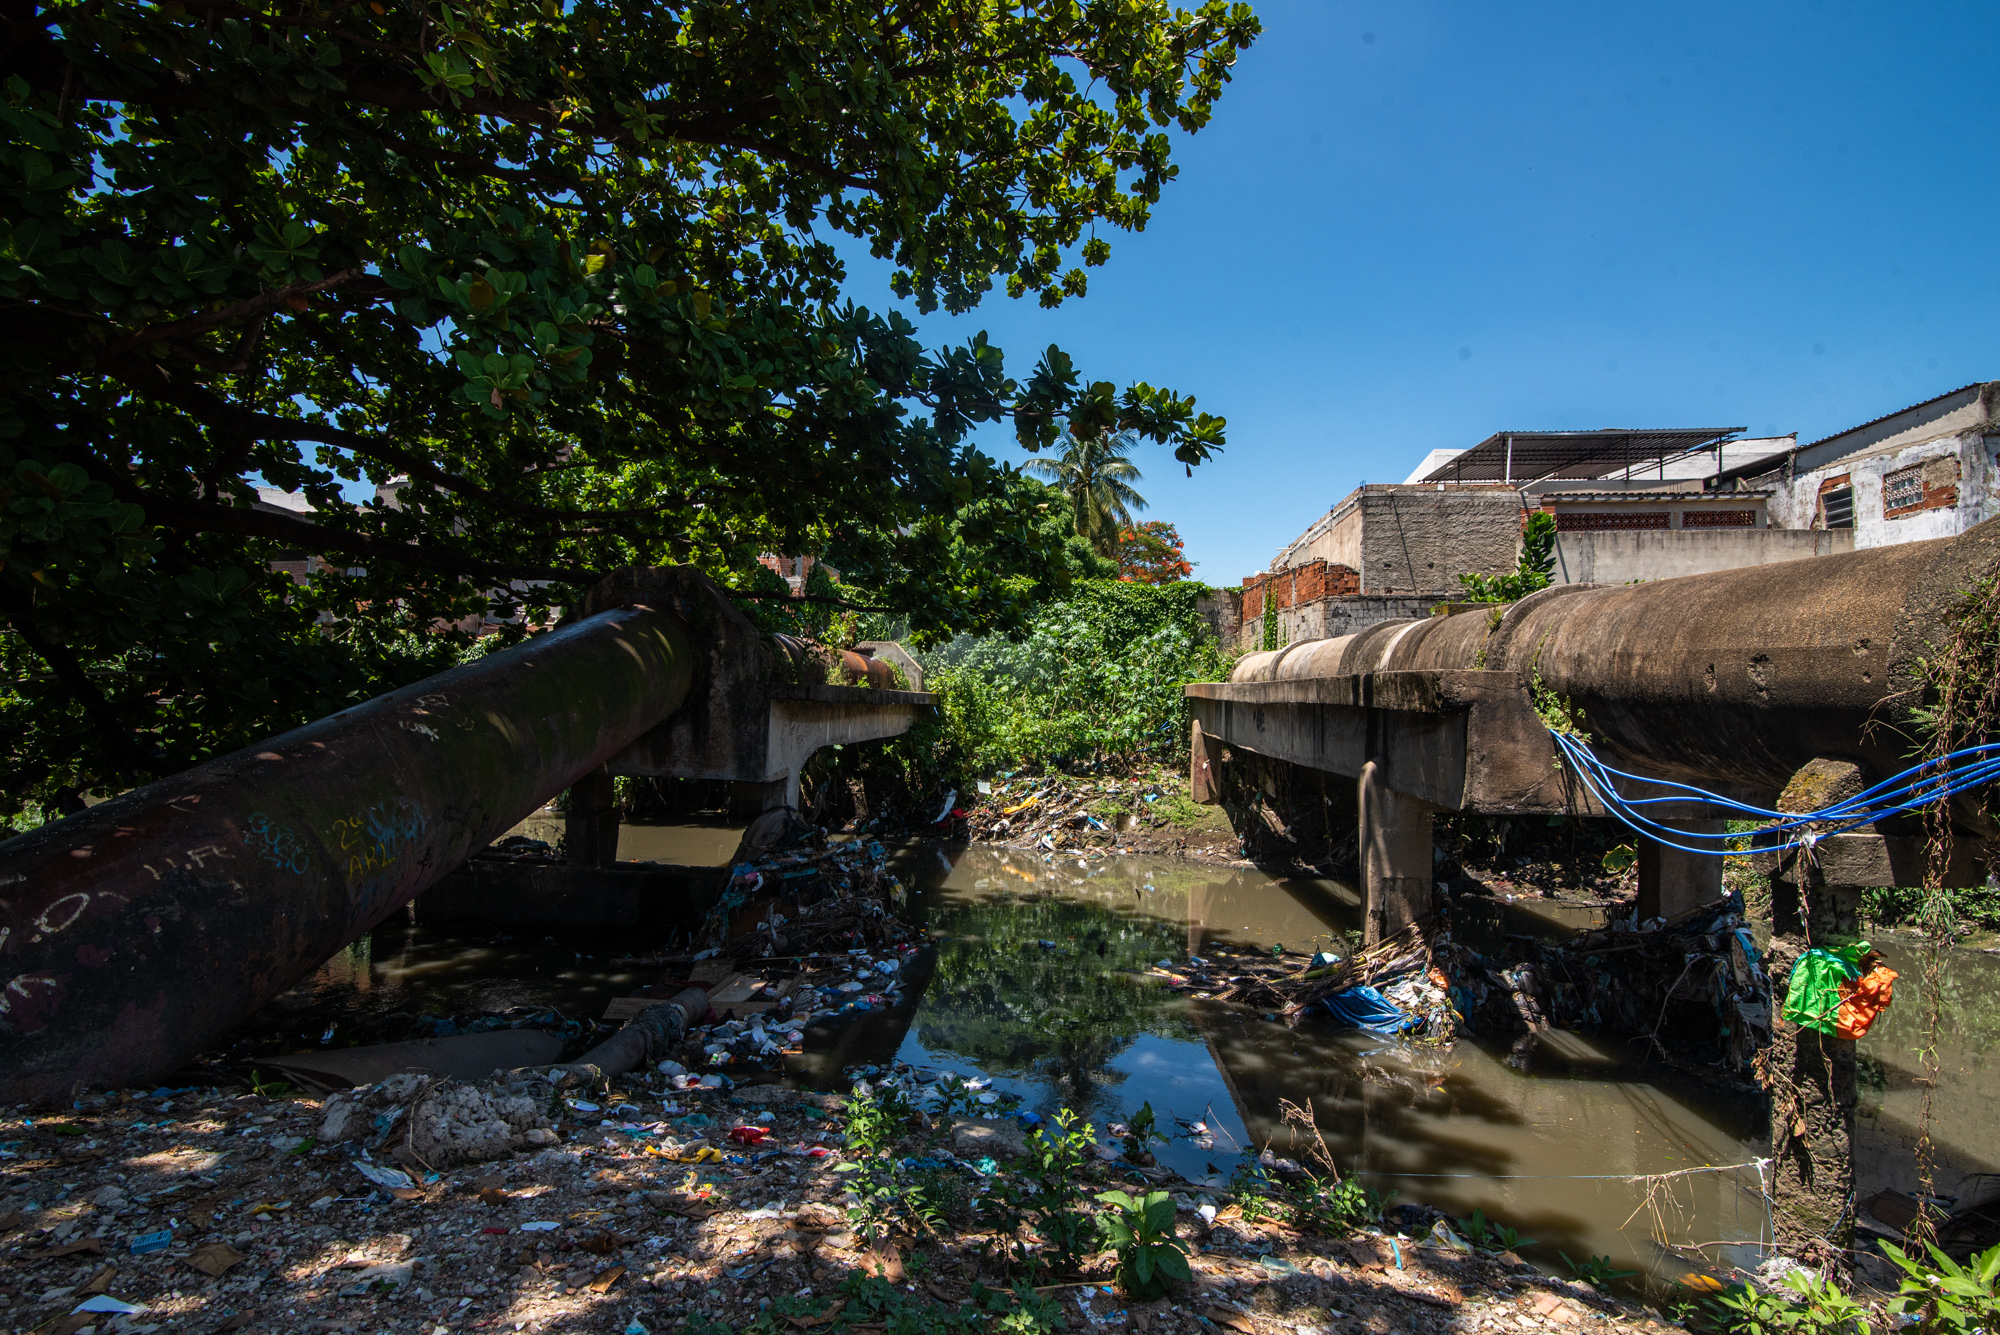 Rio Faria-Timbó completamente assoreado e com muito lixo, revela o abandono do governo ao território das favelas. Foto: Bárbara Dias